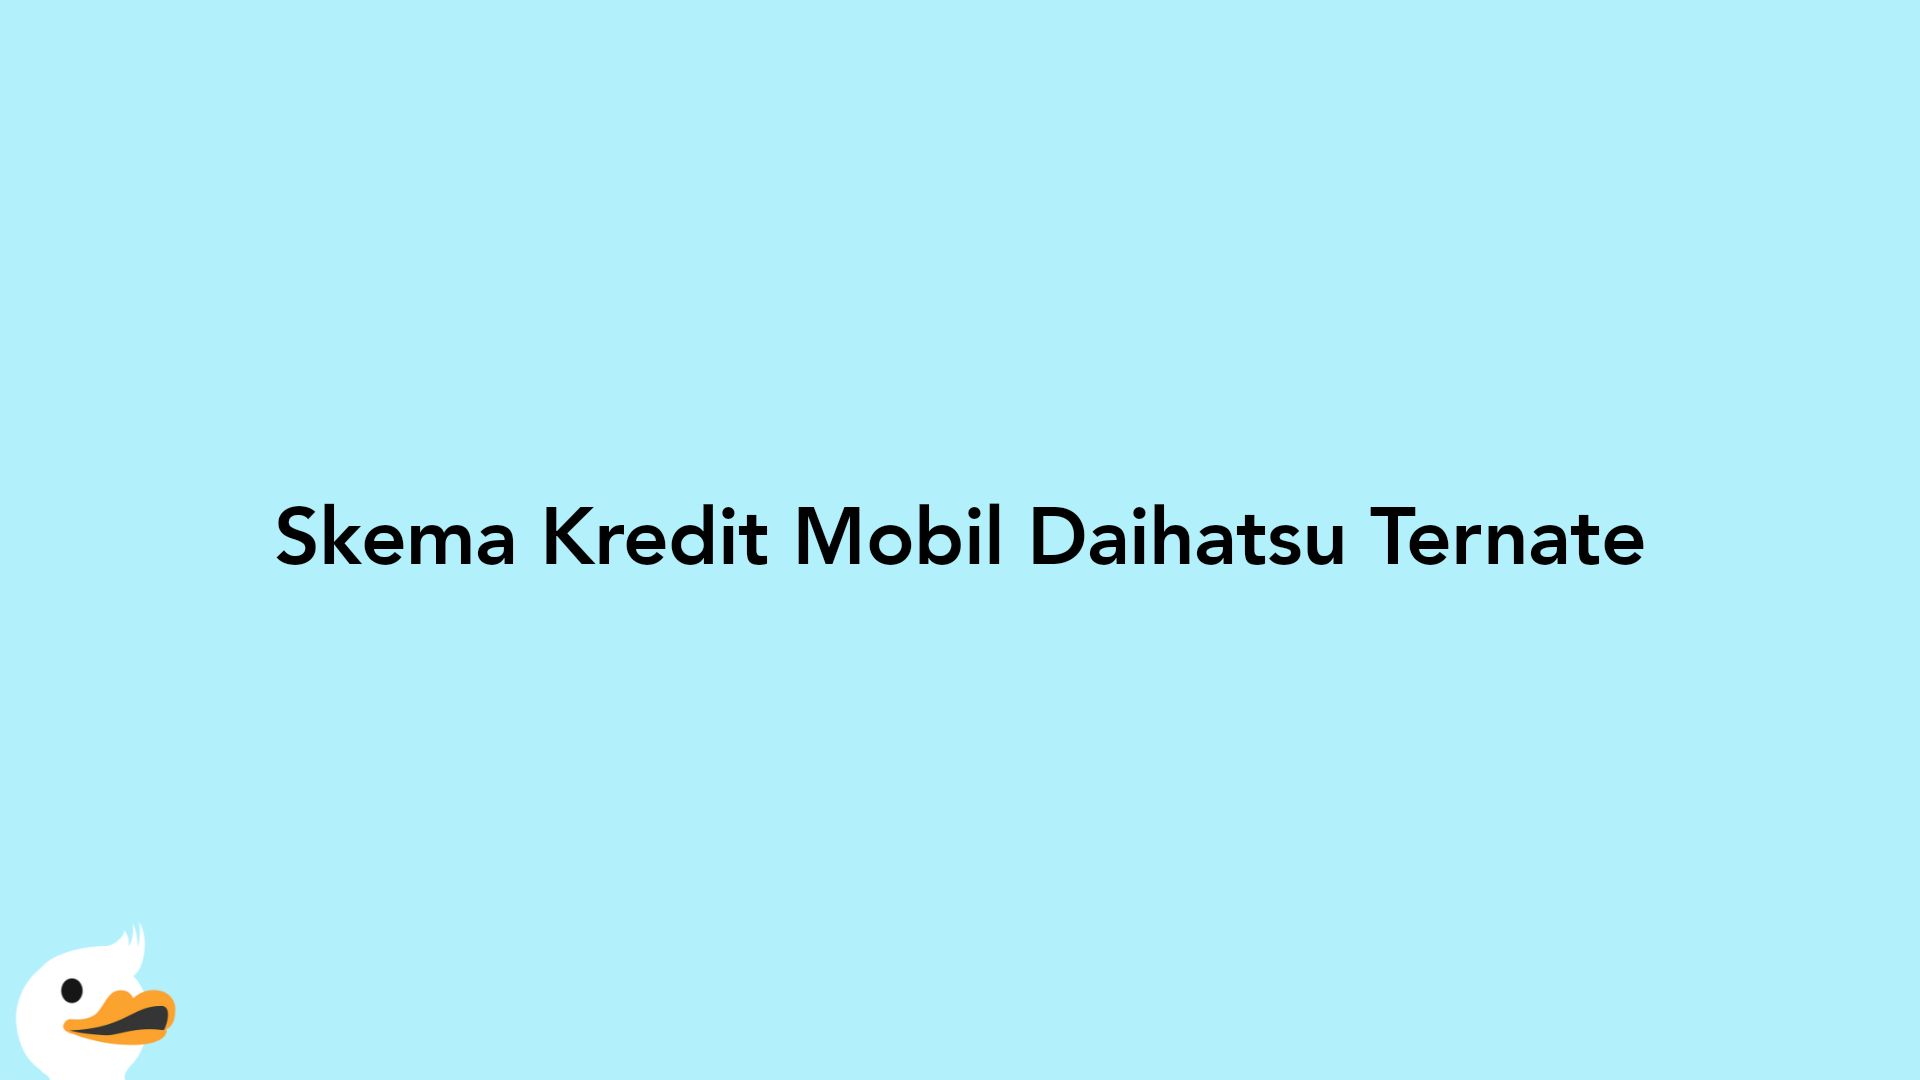 Skema Kredit Mobil Daihatsu Ternate